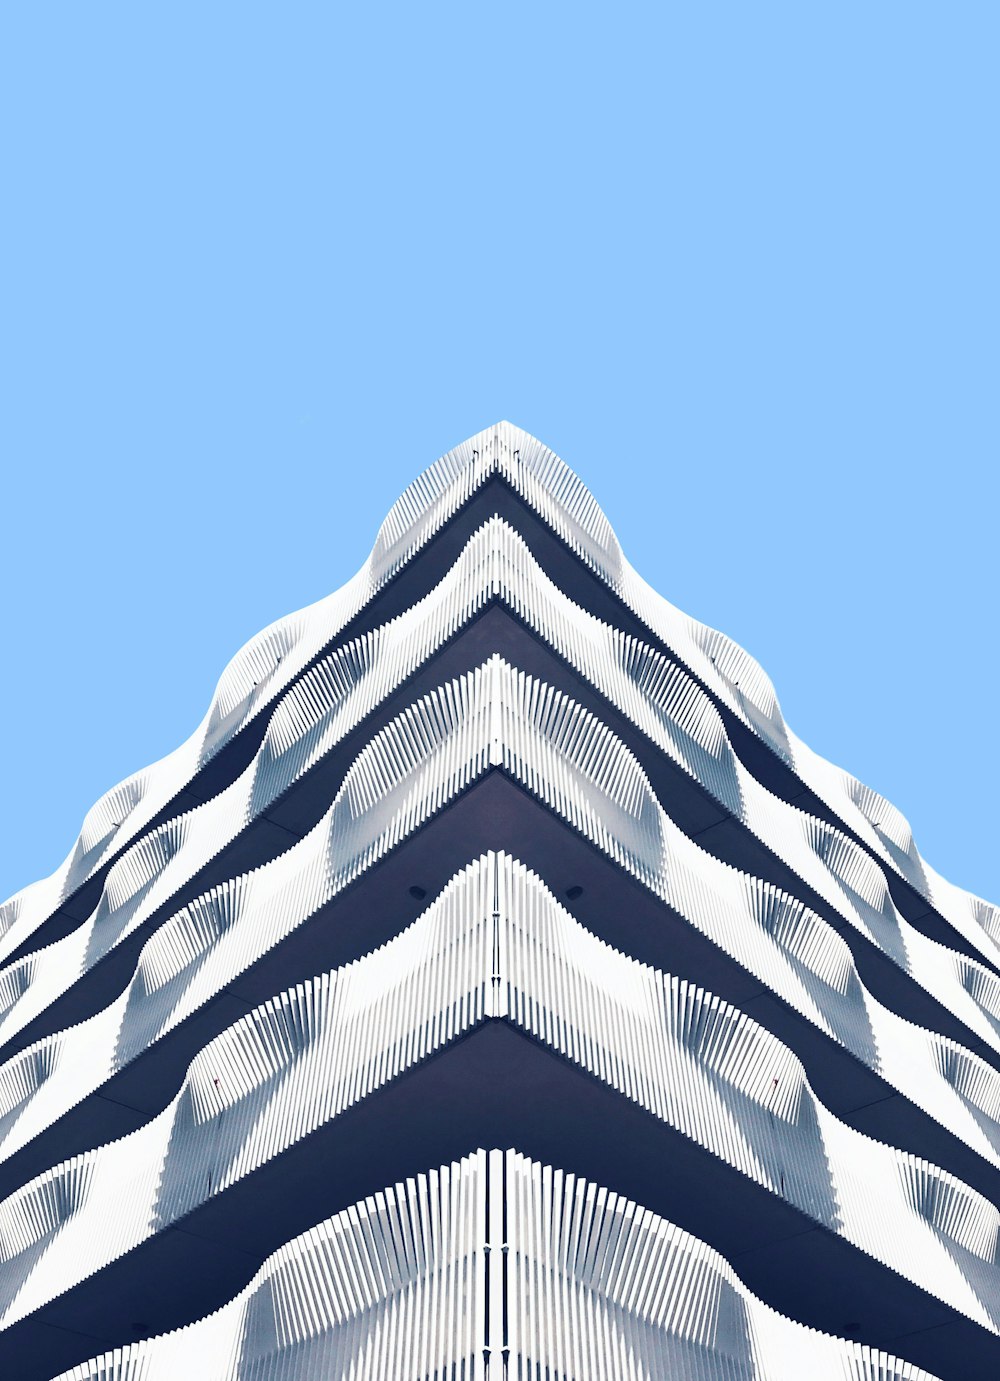 Photographie d’architecture de structure blanche